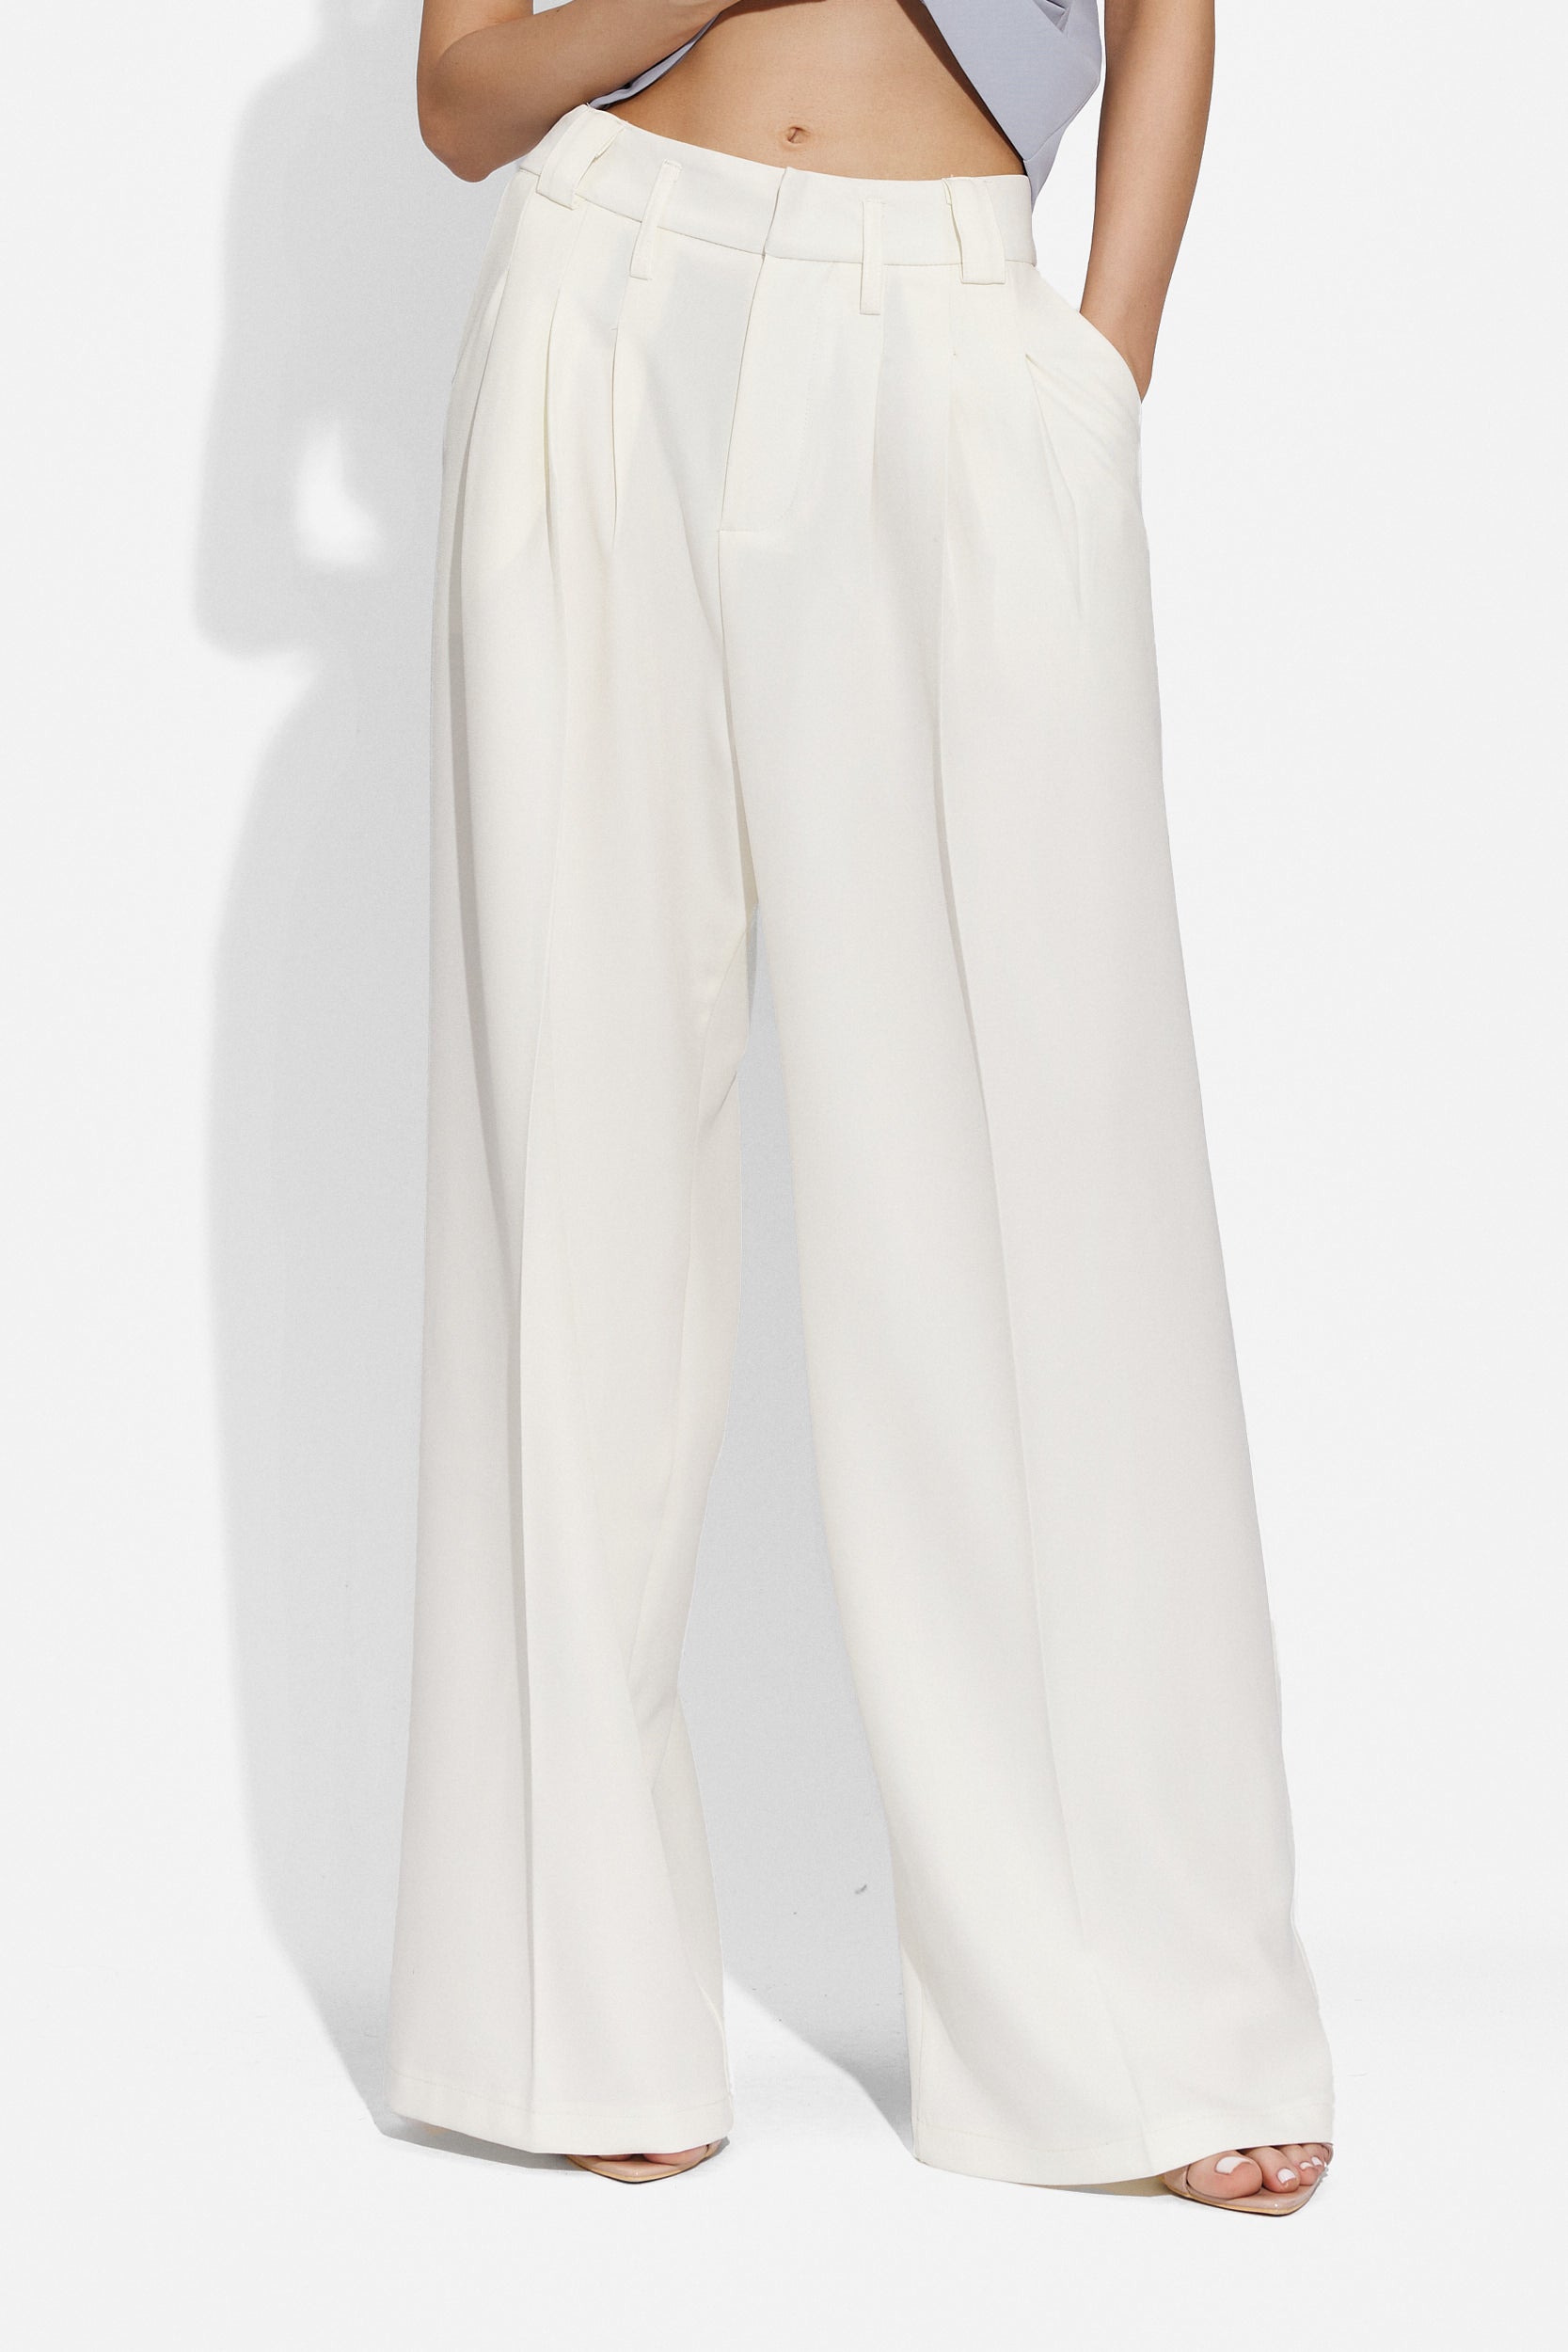 Pantsy Bogas elegáns fehér női nadrág